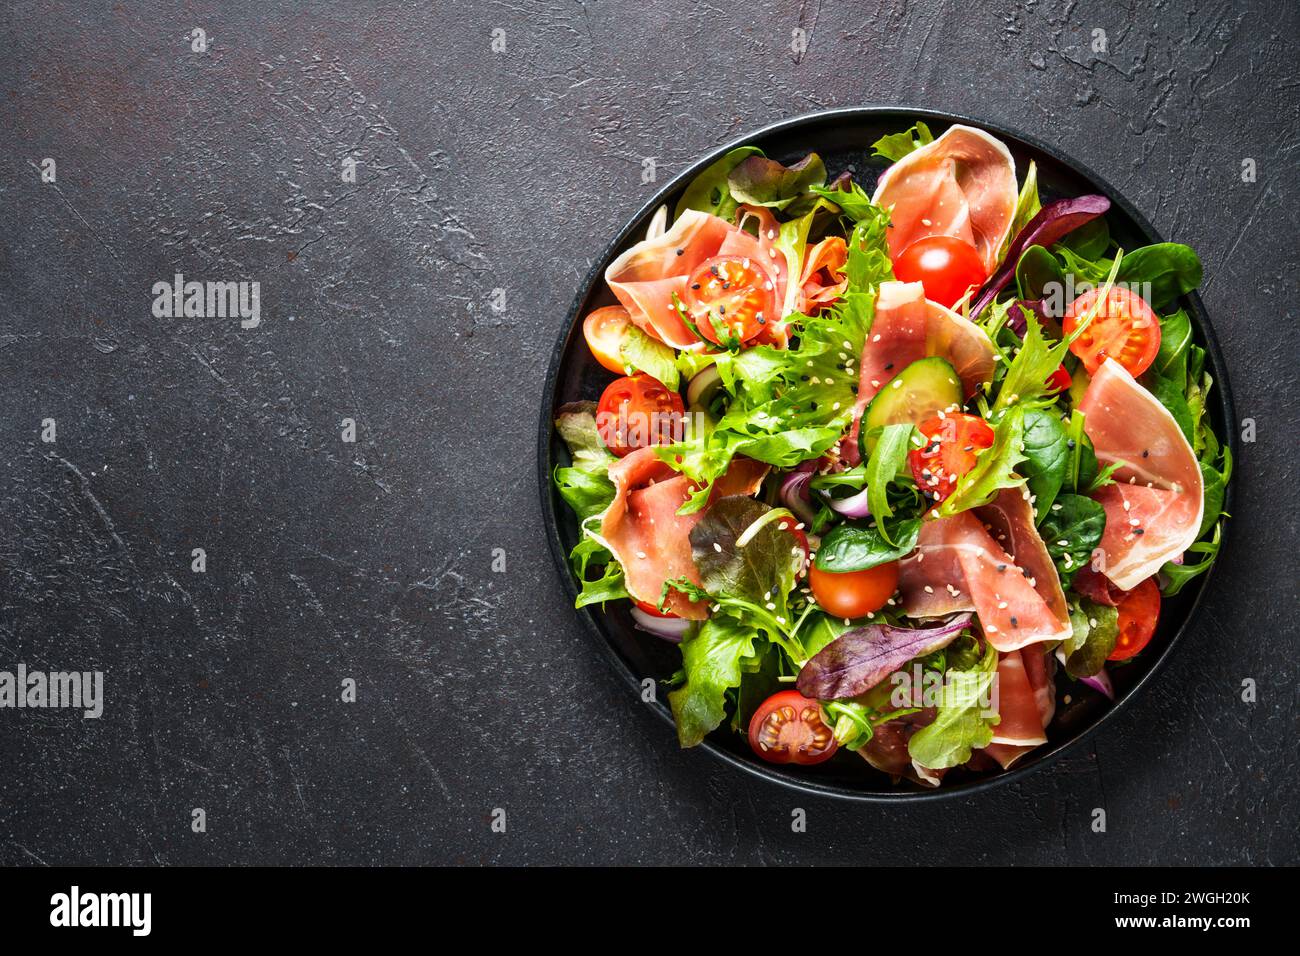 Salade verte sur fond noir. Feuilles de salade vertes, viande fumée et tomates. Vue de dessus avec espace pour le texte. Banque D'Images